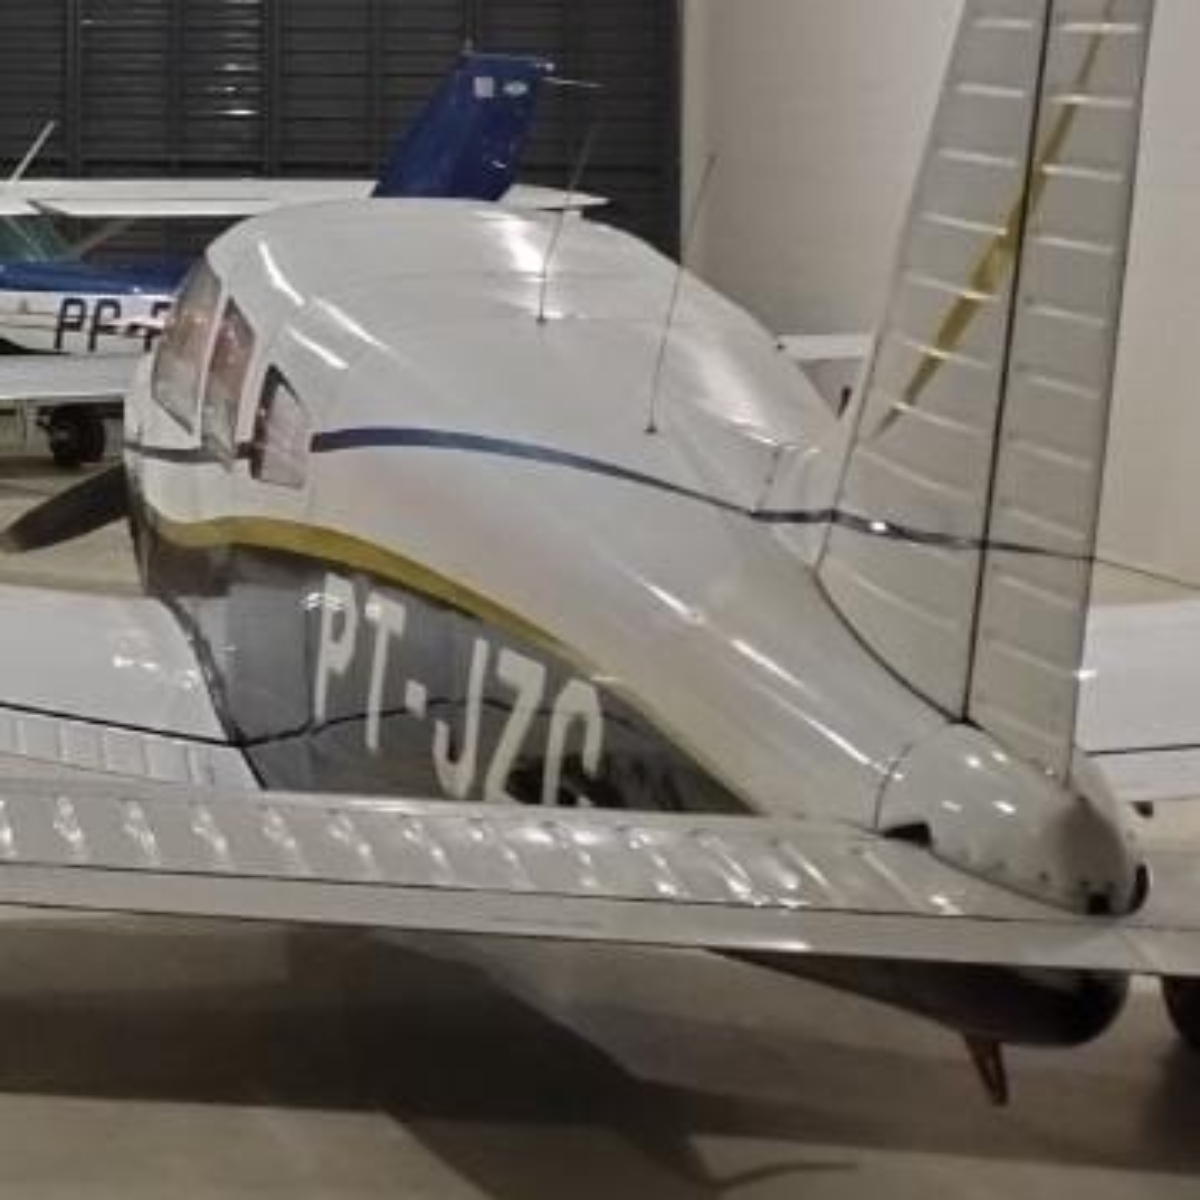  Avião que desapareceu no Paraná é um monomotor fabricado nos anos 70 